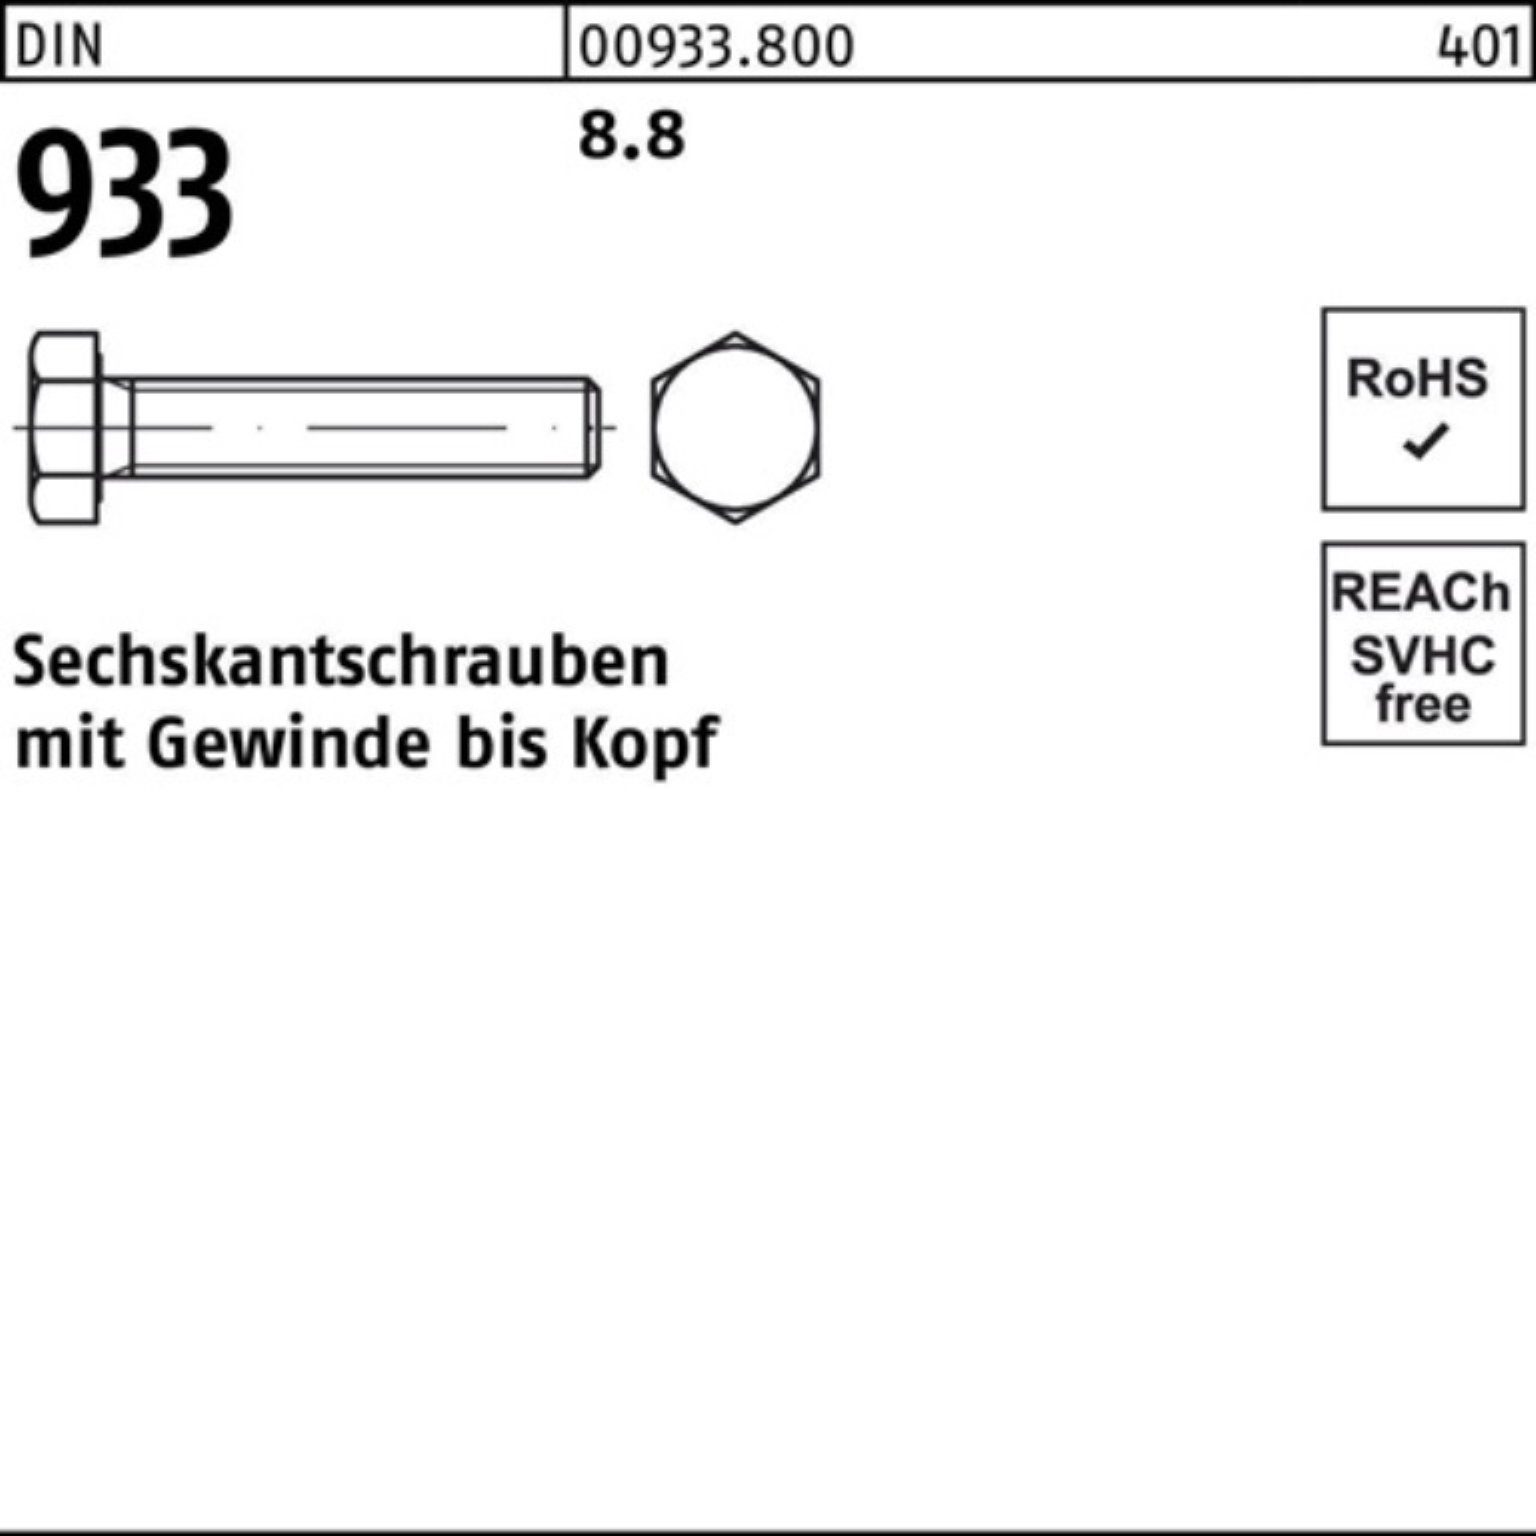 M24x 8.8 Sechskantschraube Sechskantschraube DIN Reyher Pack 933 933 100er 120 VG DIN Stück 10